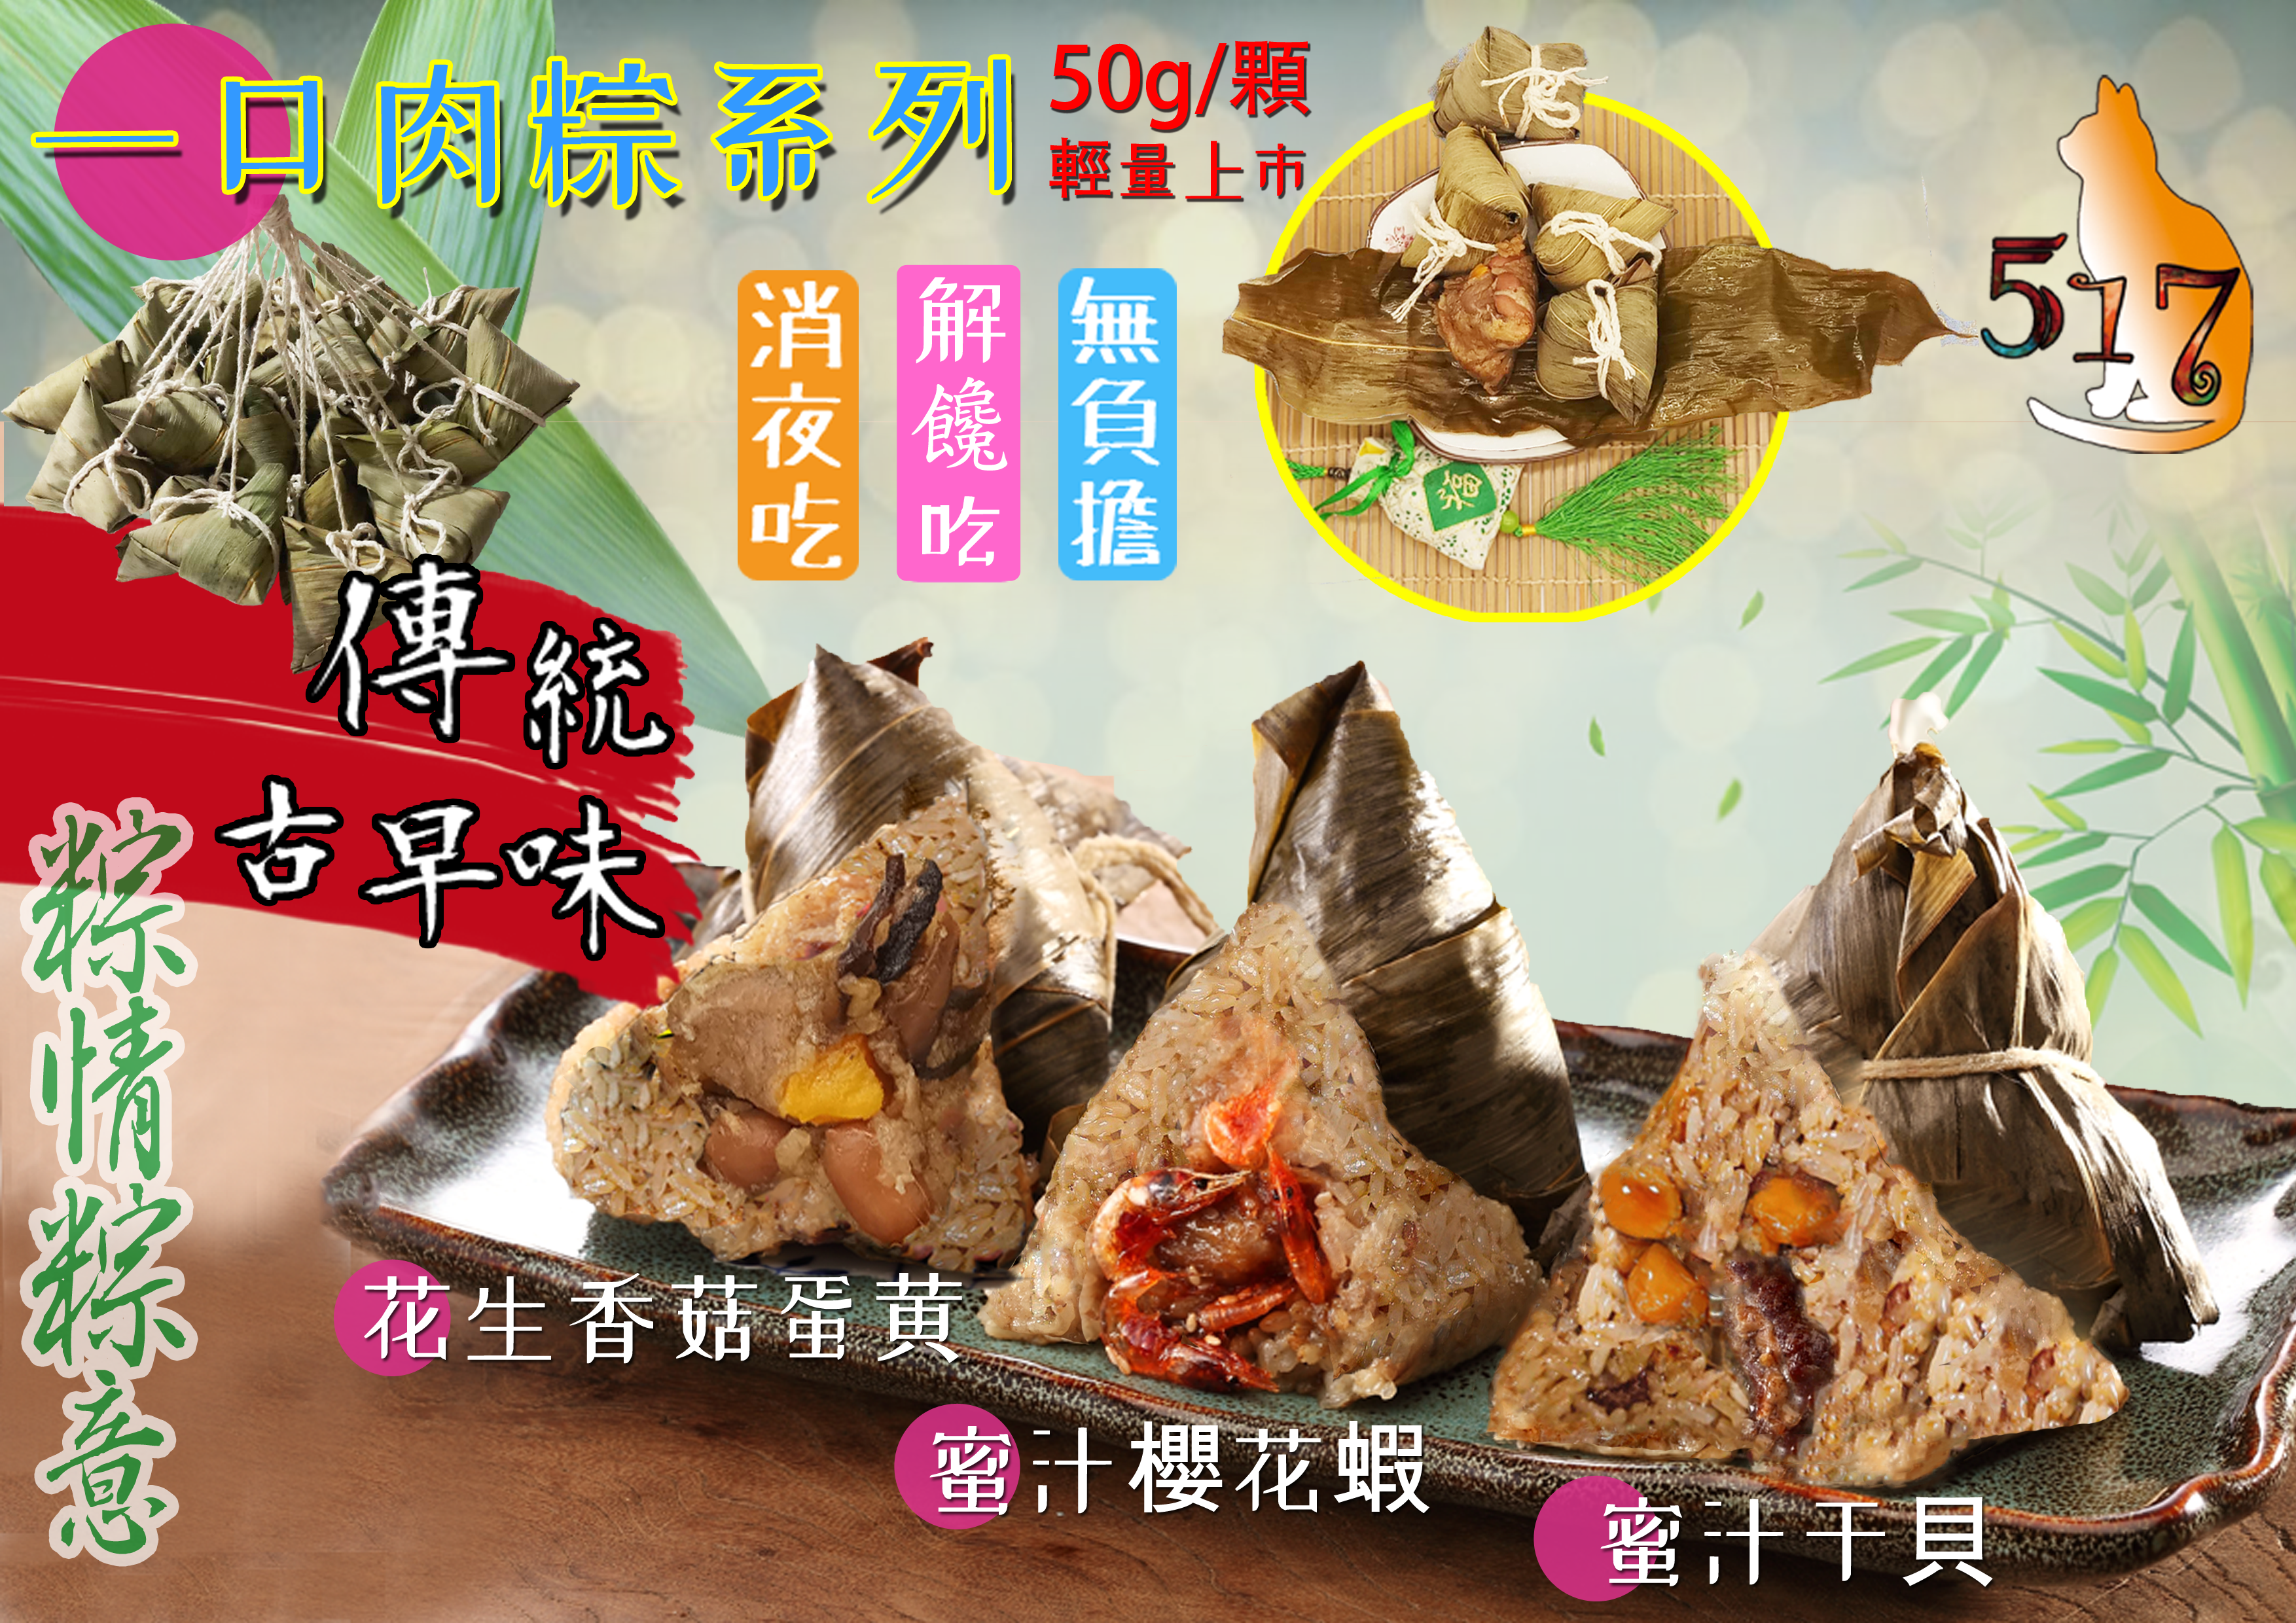 【517】超夯手工一口粽保冰袋組(7顆/組) 花生香菇蛋黃粽+櫻花蝦粽+干貝粽